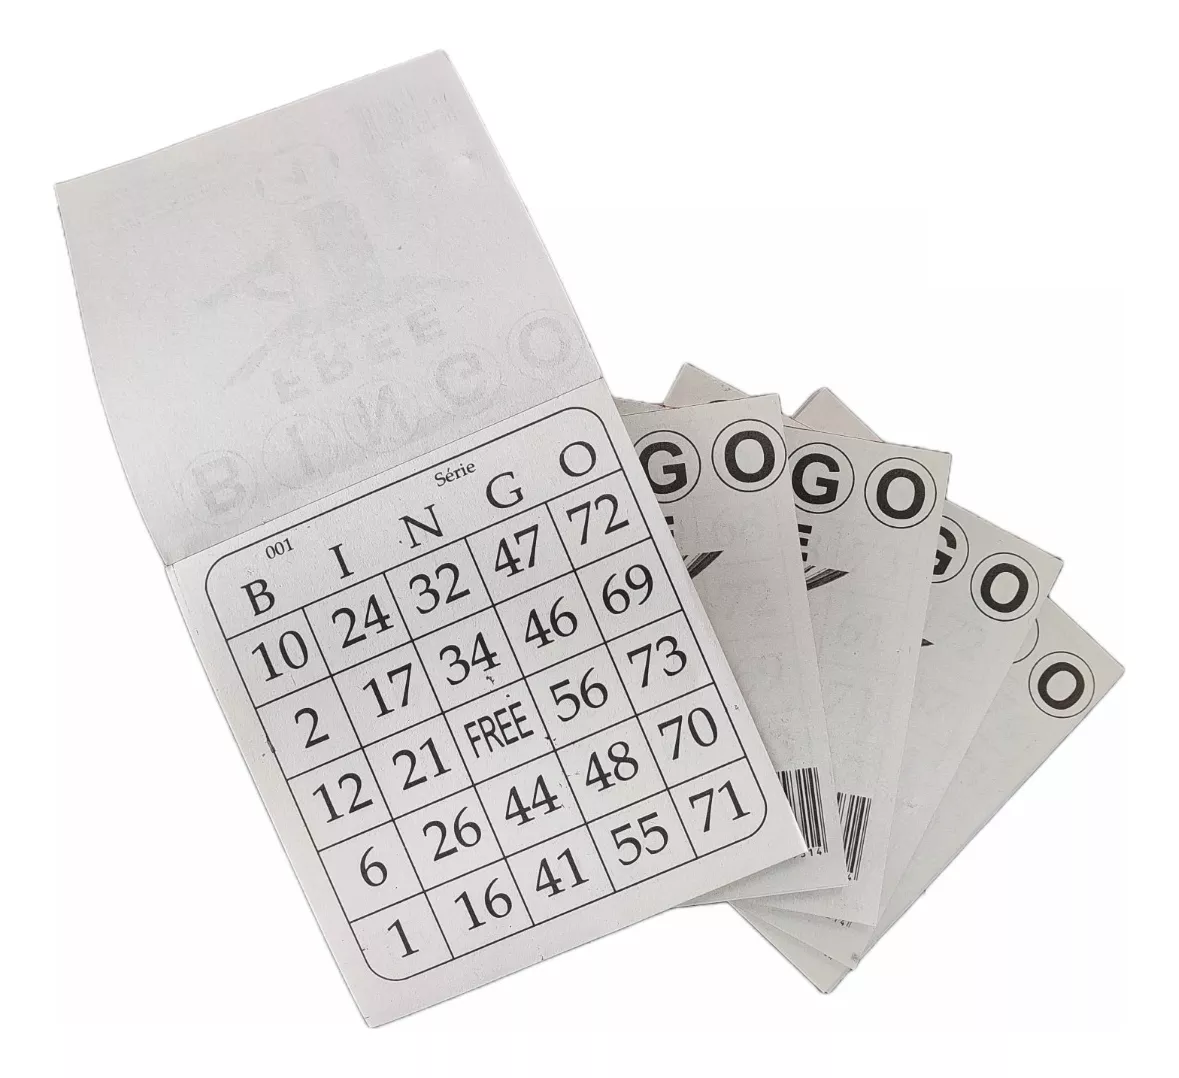 Segunda imagem para pesquisa de cartela de bingo